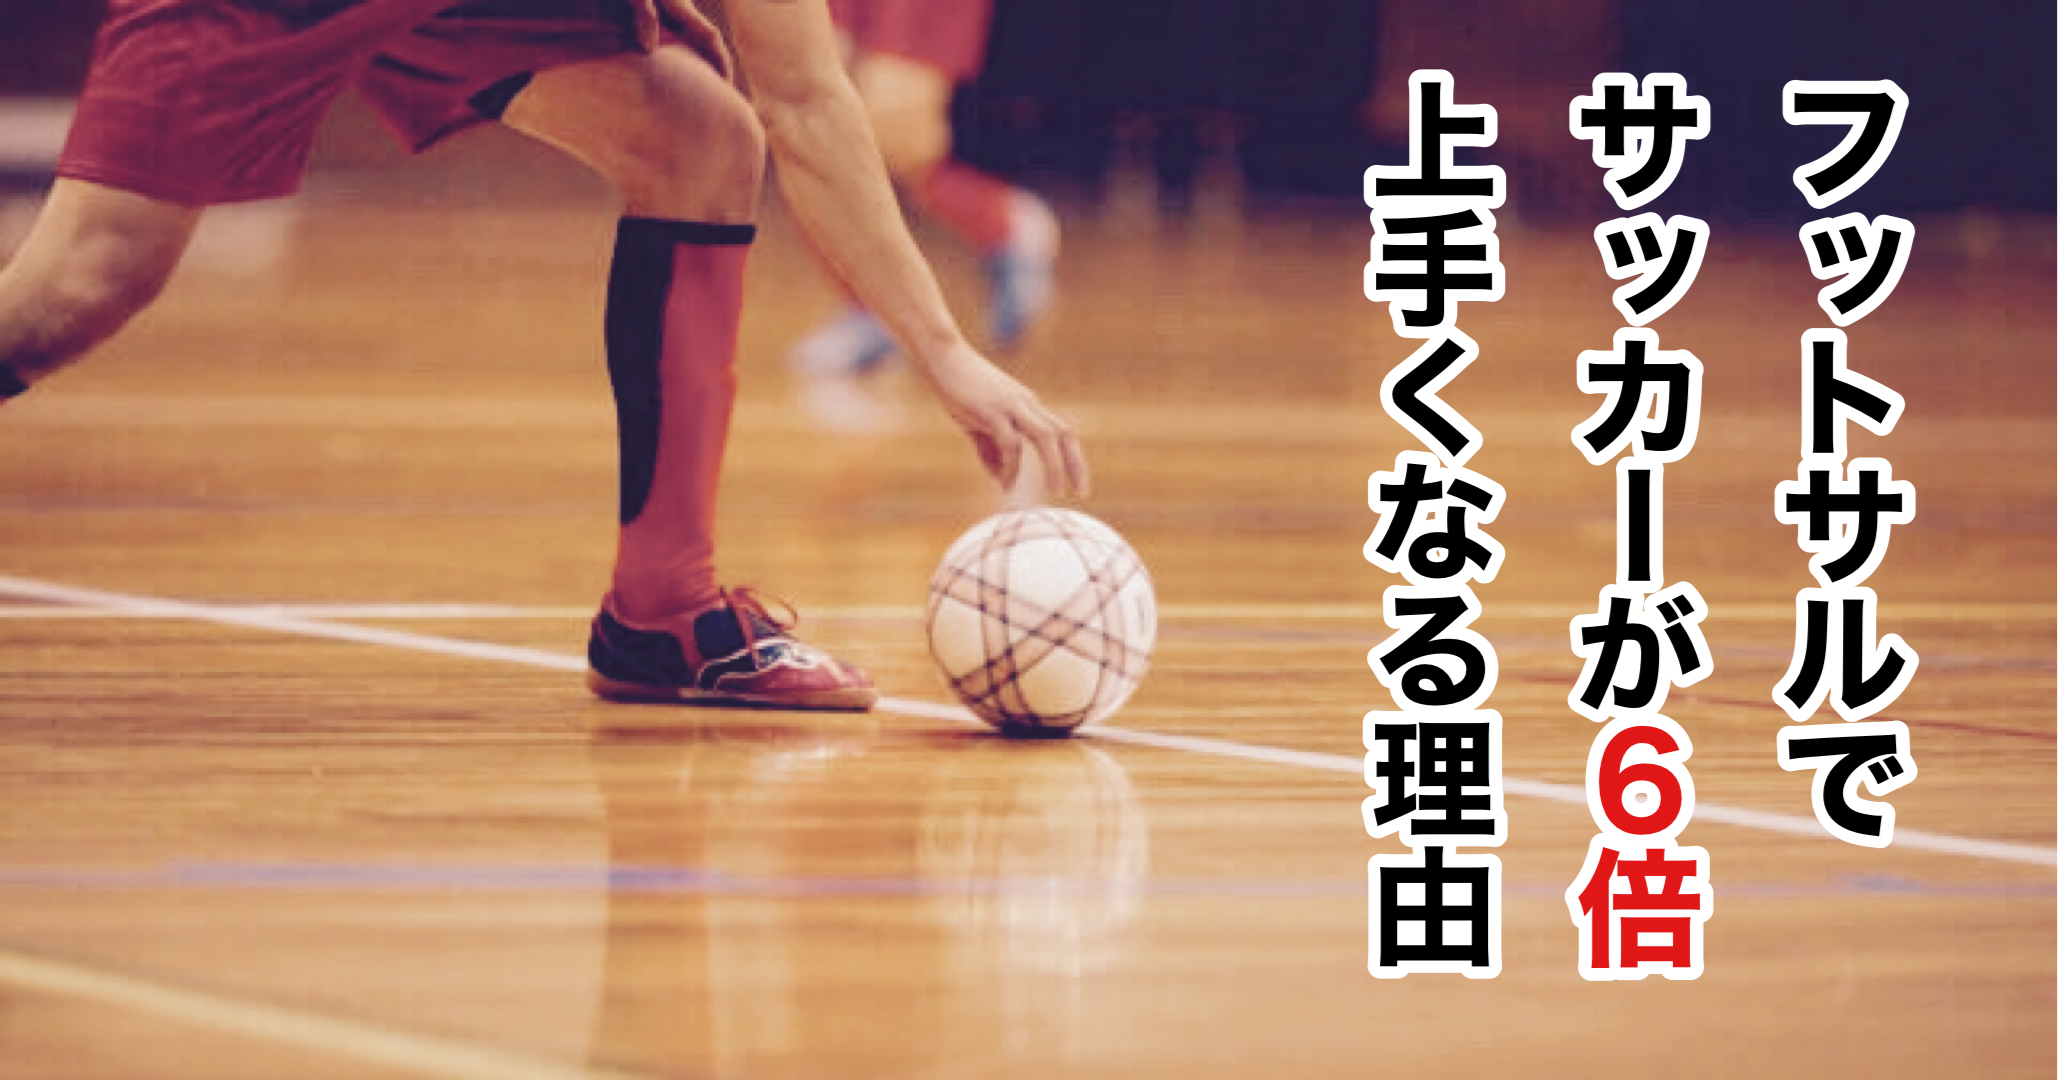 福岡のフットサルスクール Soluna F S キッズ ジュニア専門クラブ サッカーが６倍上手くなる理由